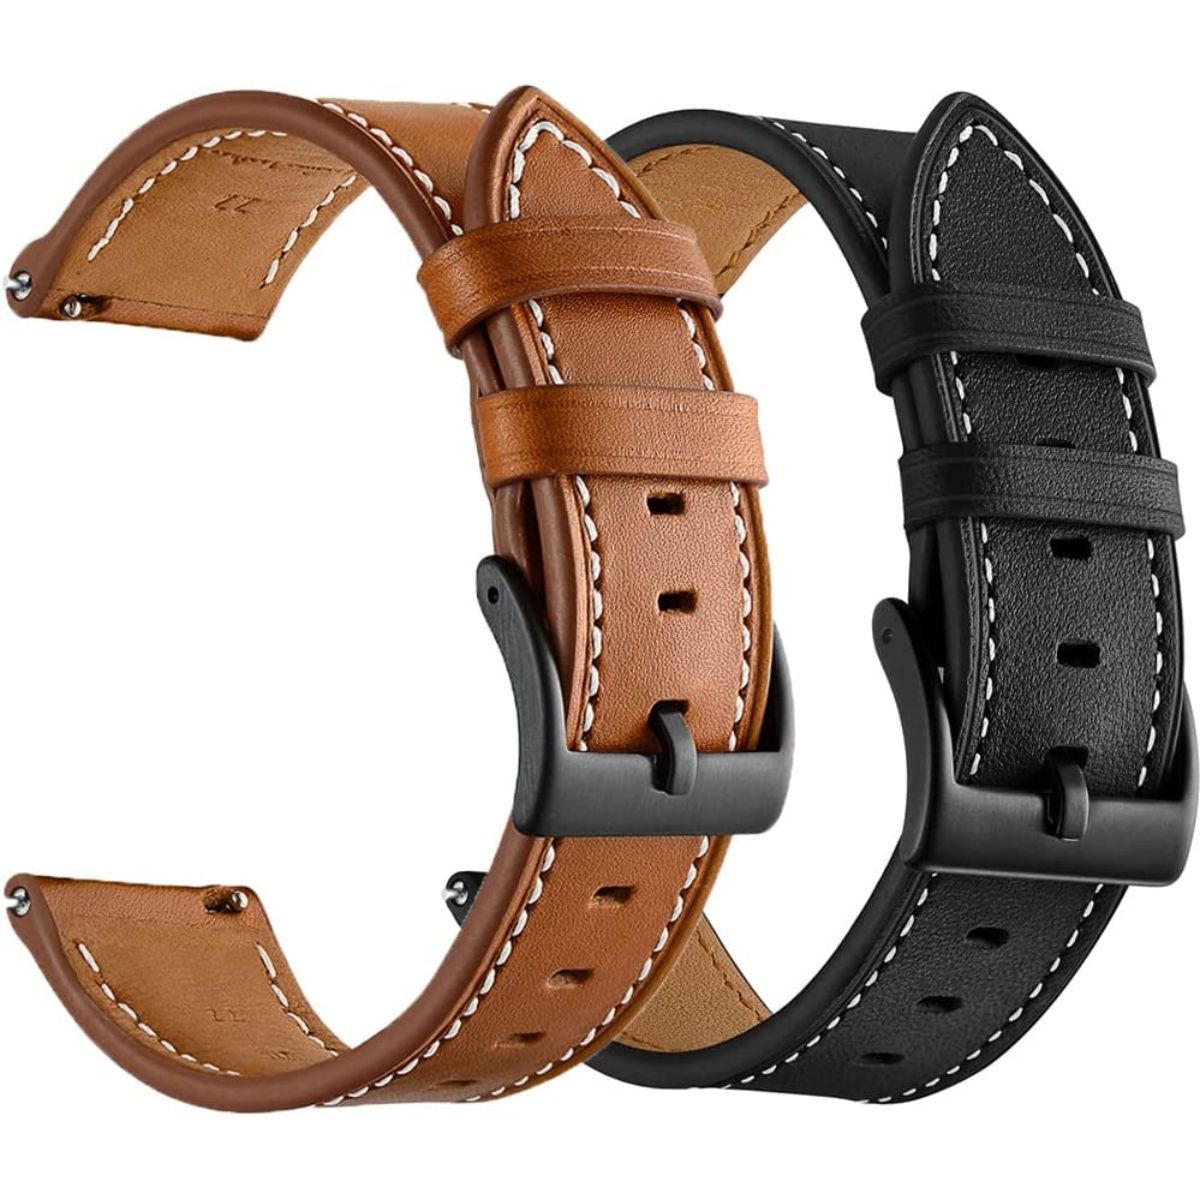 Olytop Leather Bands 2-Pack, faixas marrons e pretas retratadas em ângulo